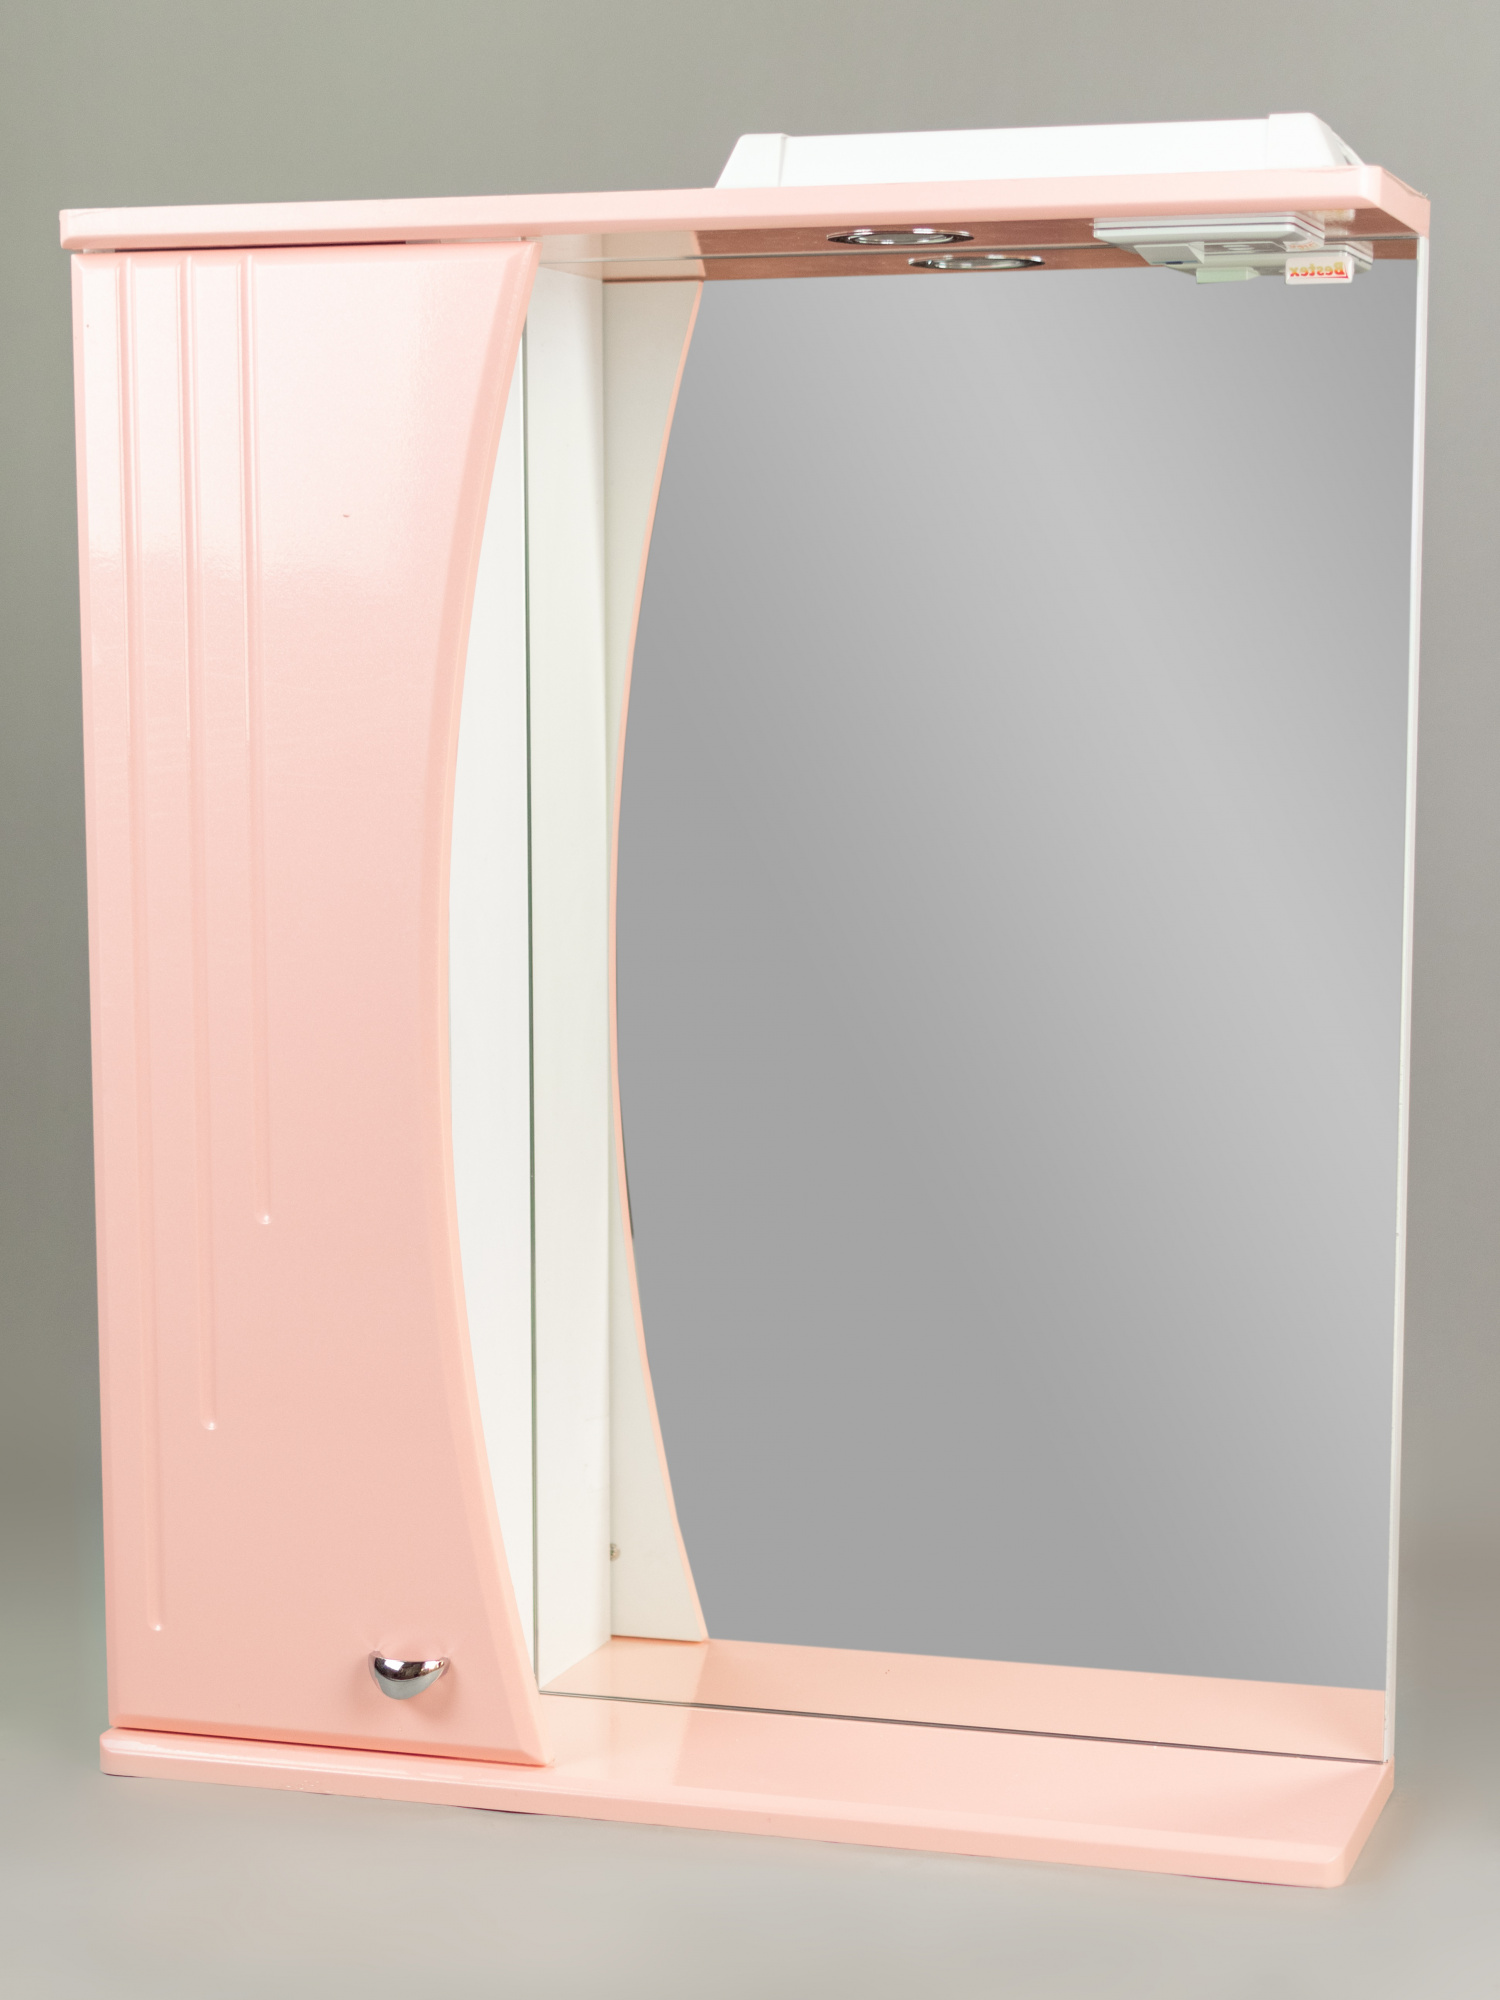 Зеркало 60 Восход (левый) розовый металлик СВ, 0725c.34L w